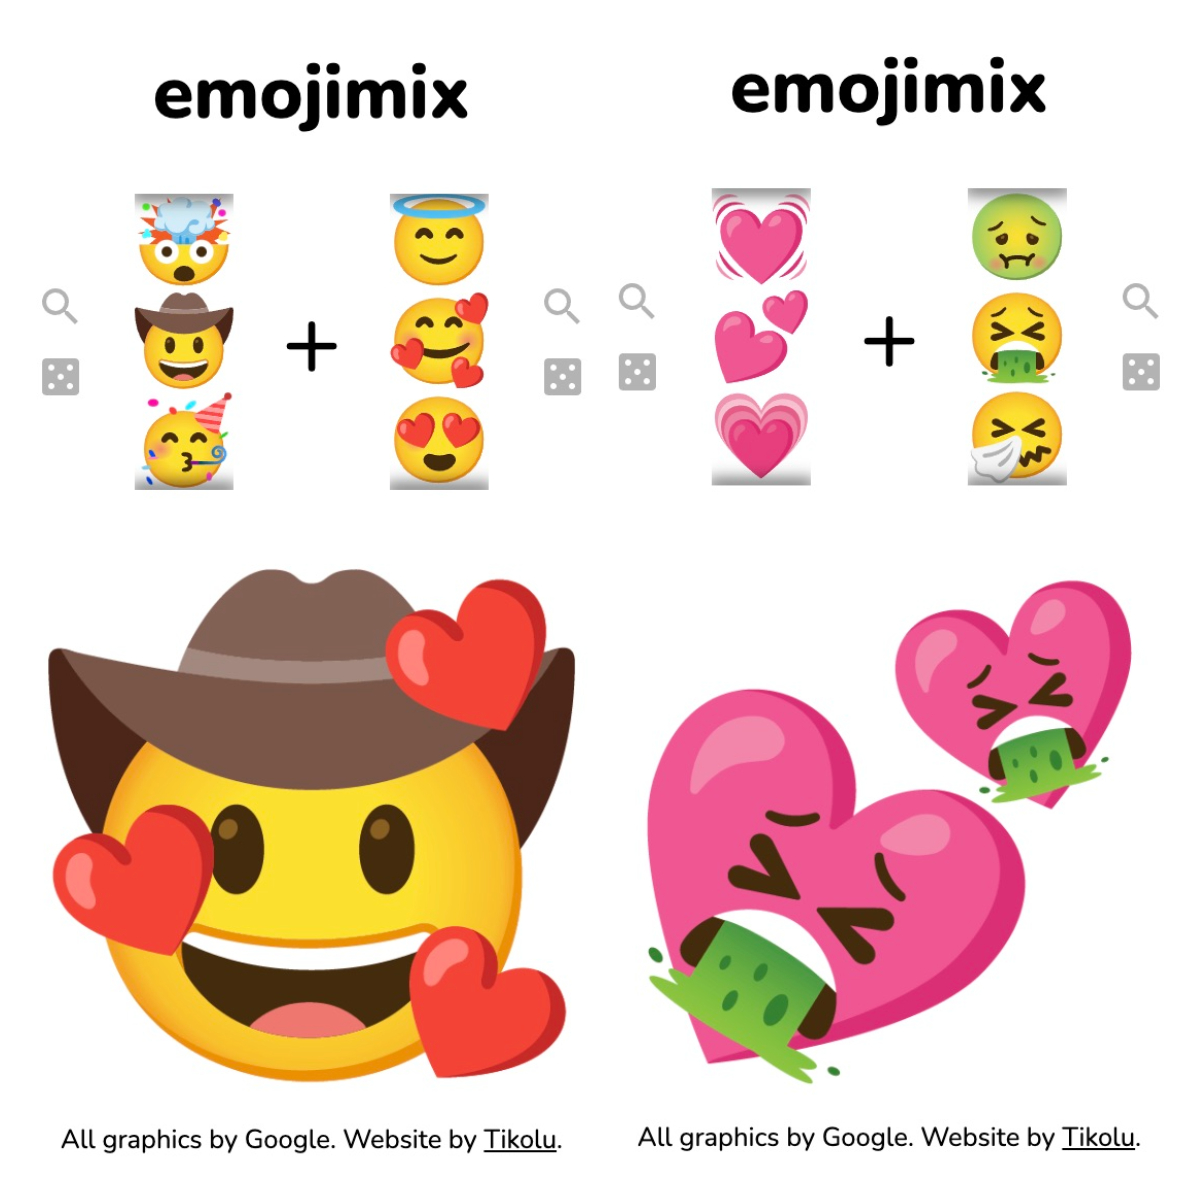 Imojimix Emoji Mix